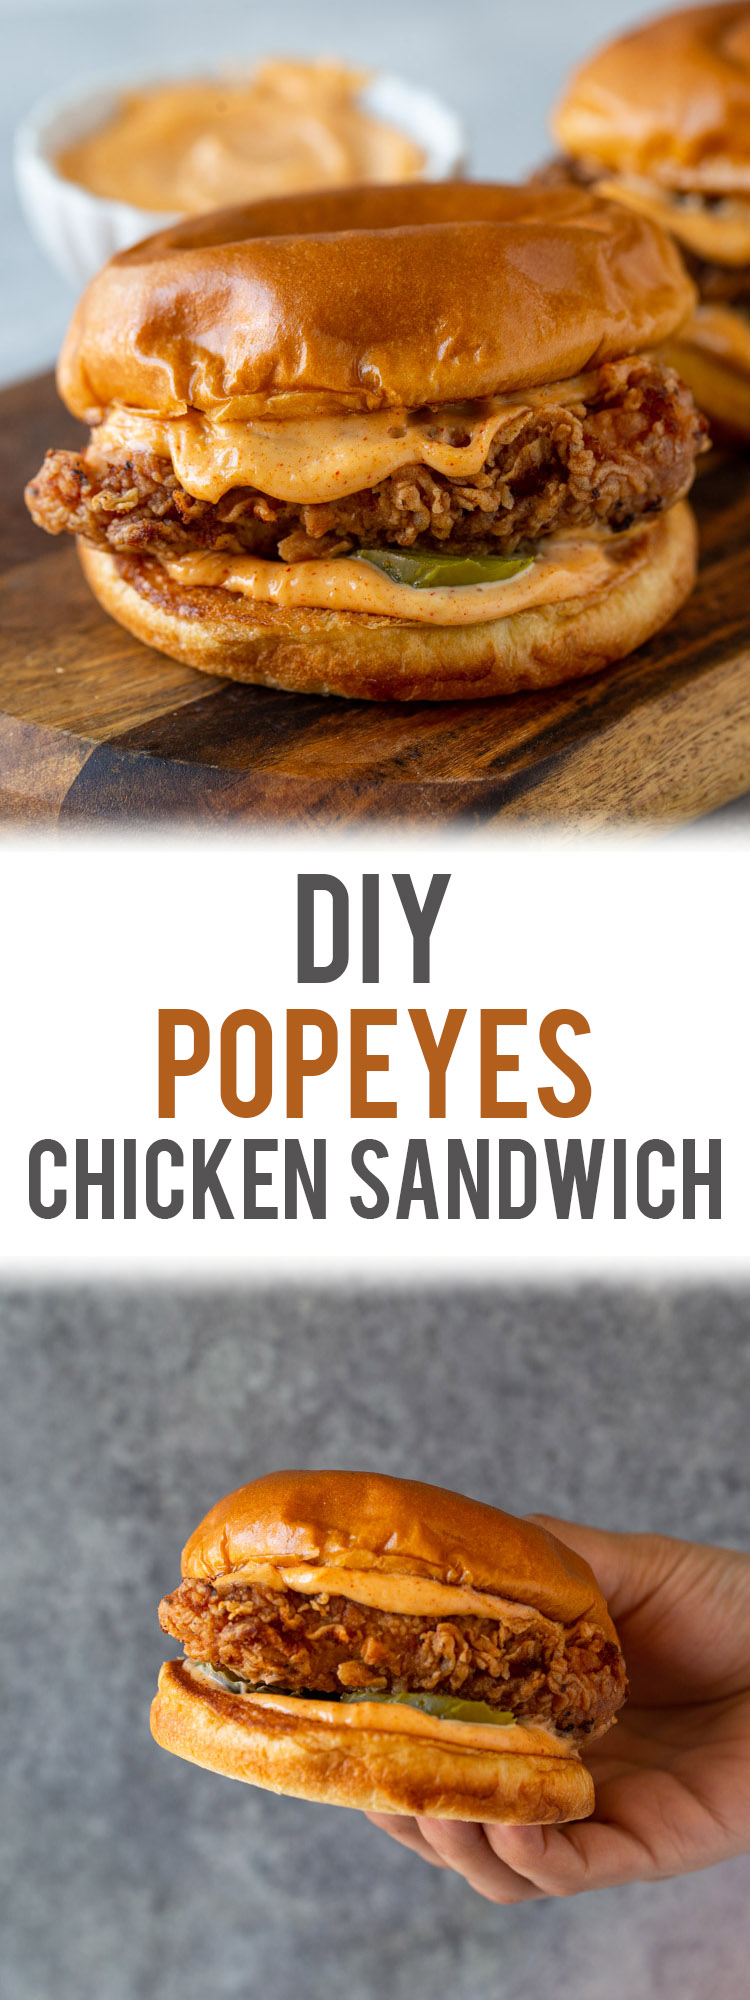 DIY Popeyes Buttermilk Fried Chicken Sandwich 